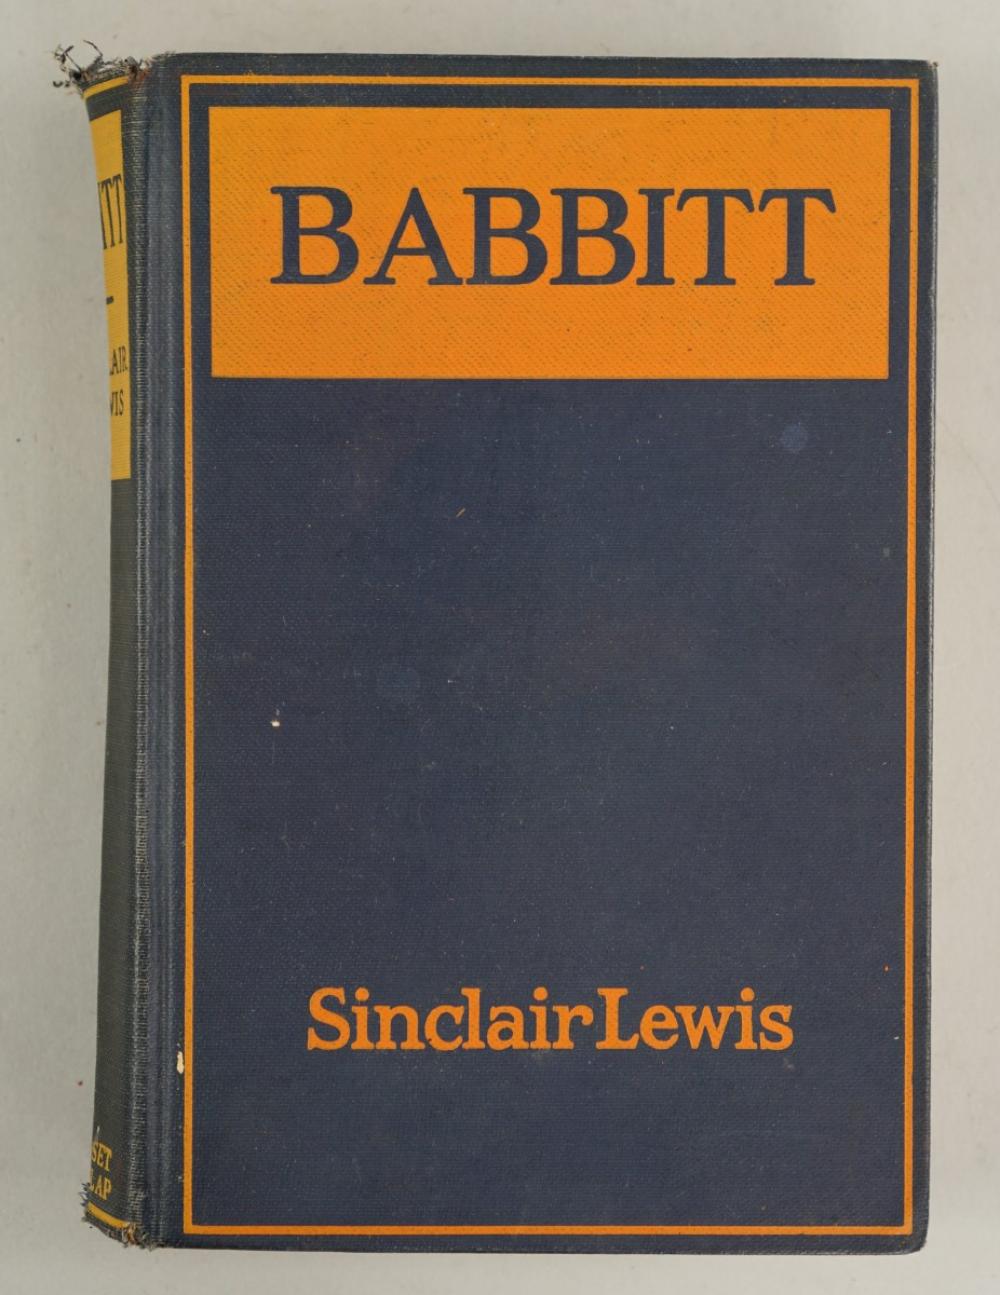 SINCLAIR LEWIS. 'BABBITT'SINCLAIR